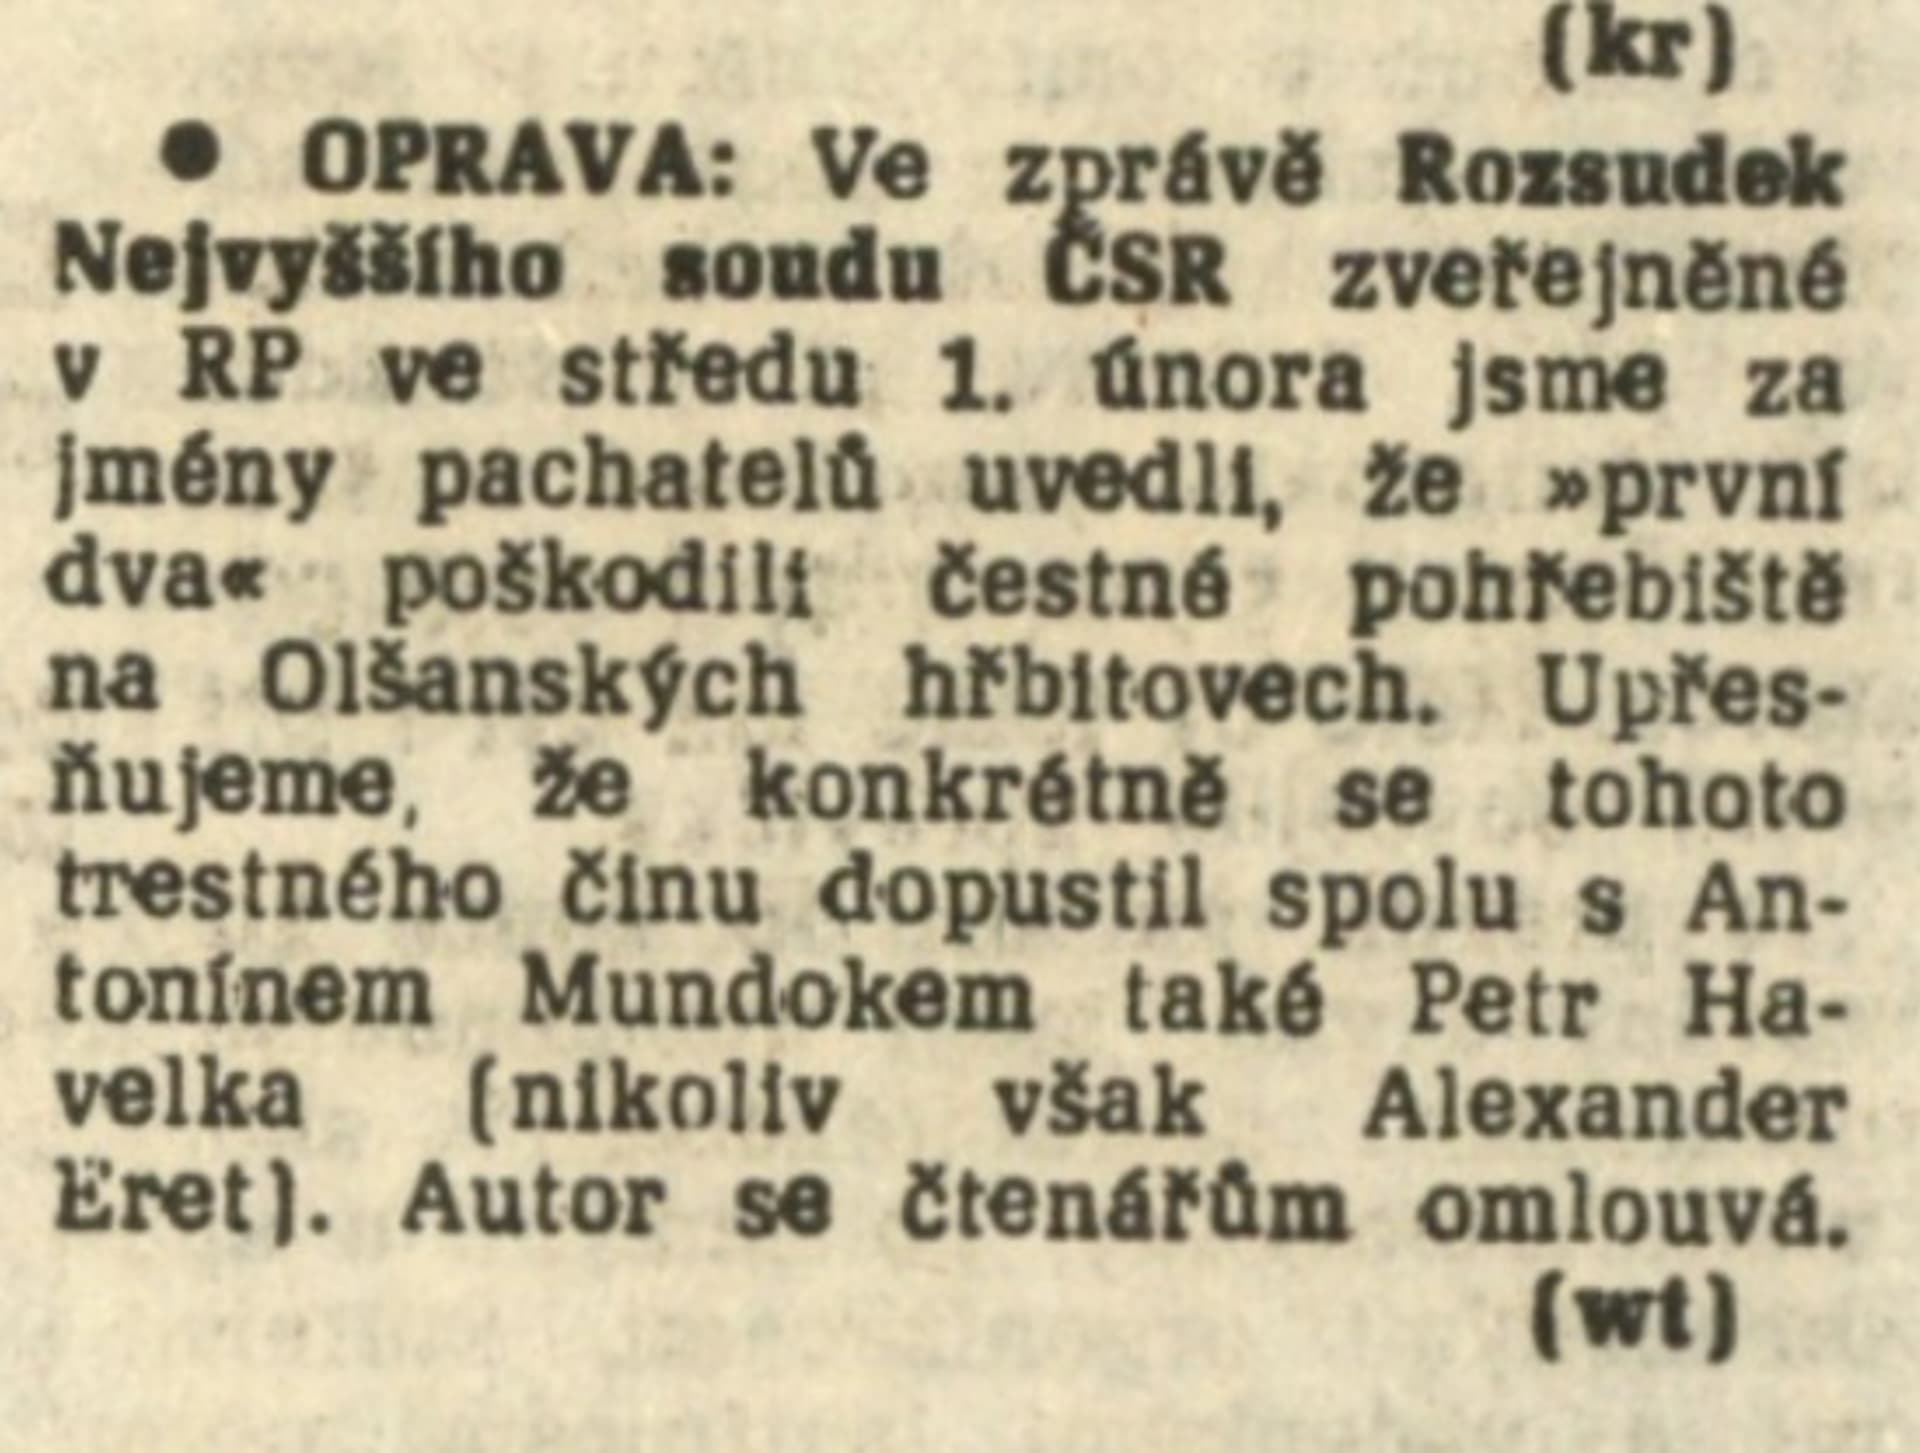 Proces Olšanské hřbitovy v dobo tisku. Rudé právo 2. 2.1989. Nevyšší soud uznal, že Eret na Olšanech vůbec nebyl.